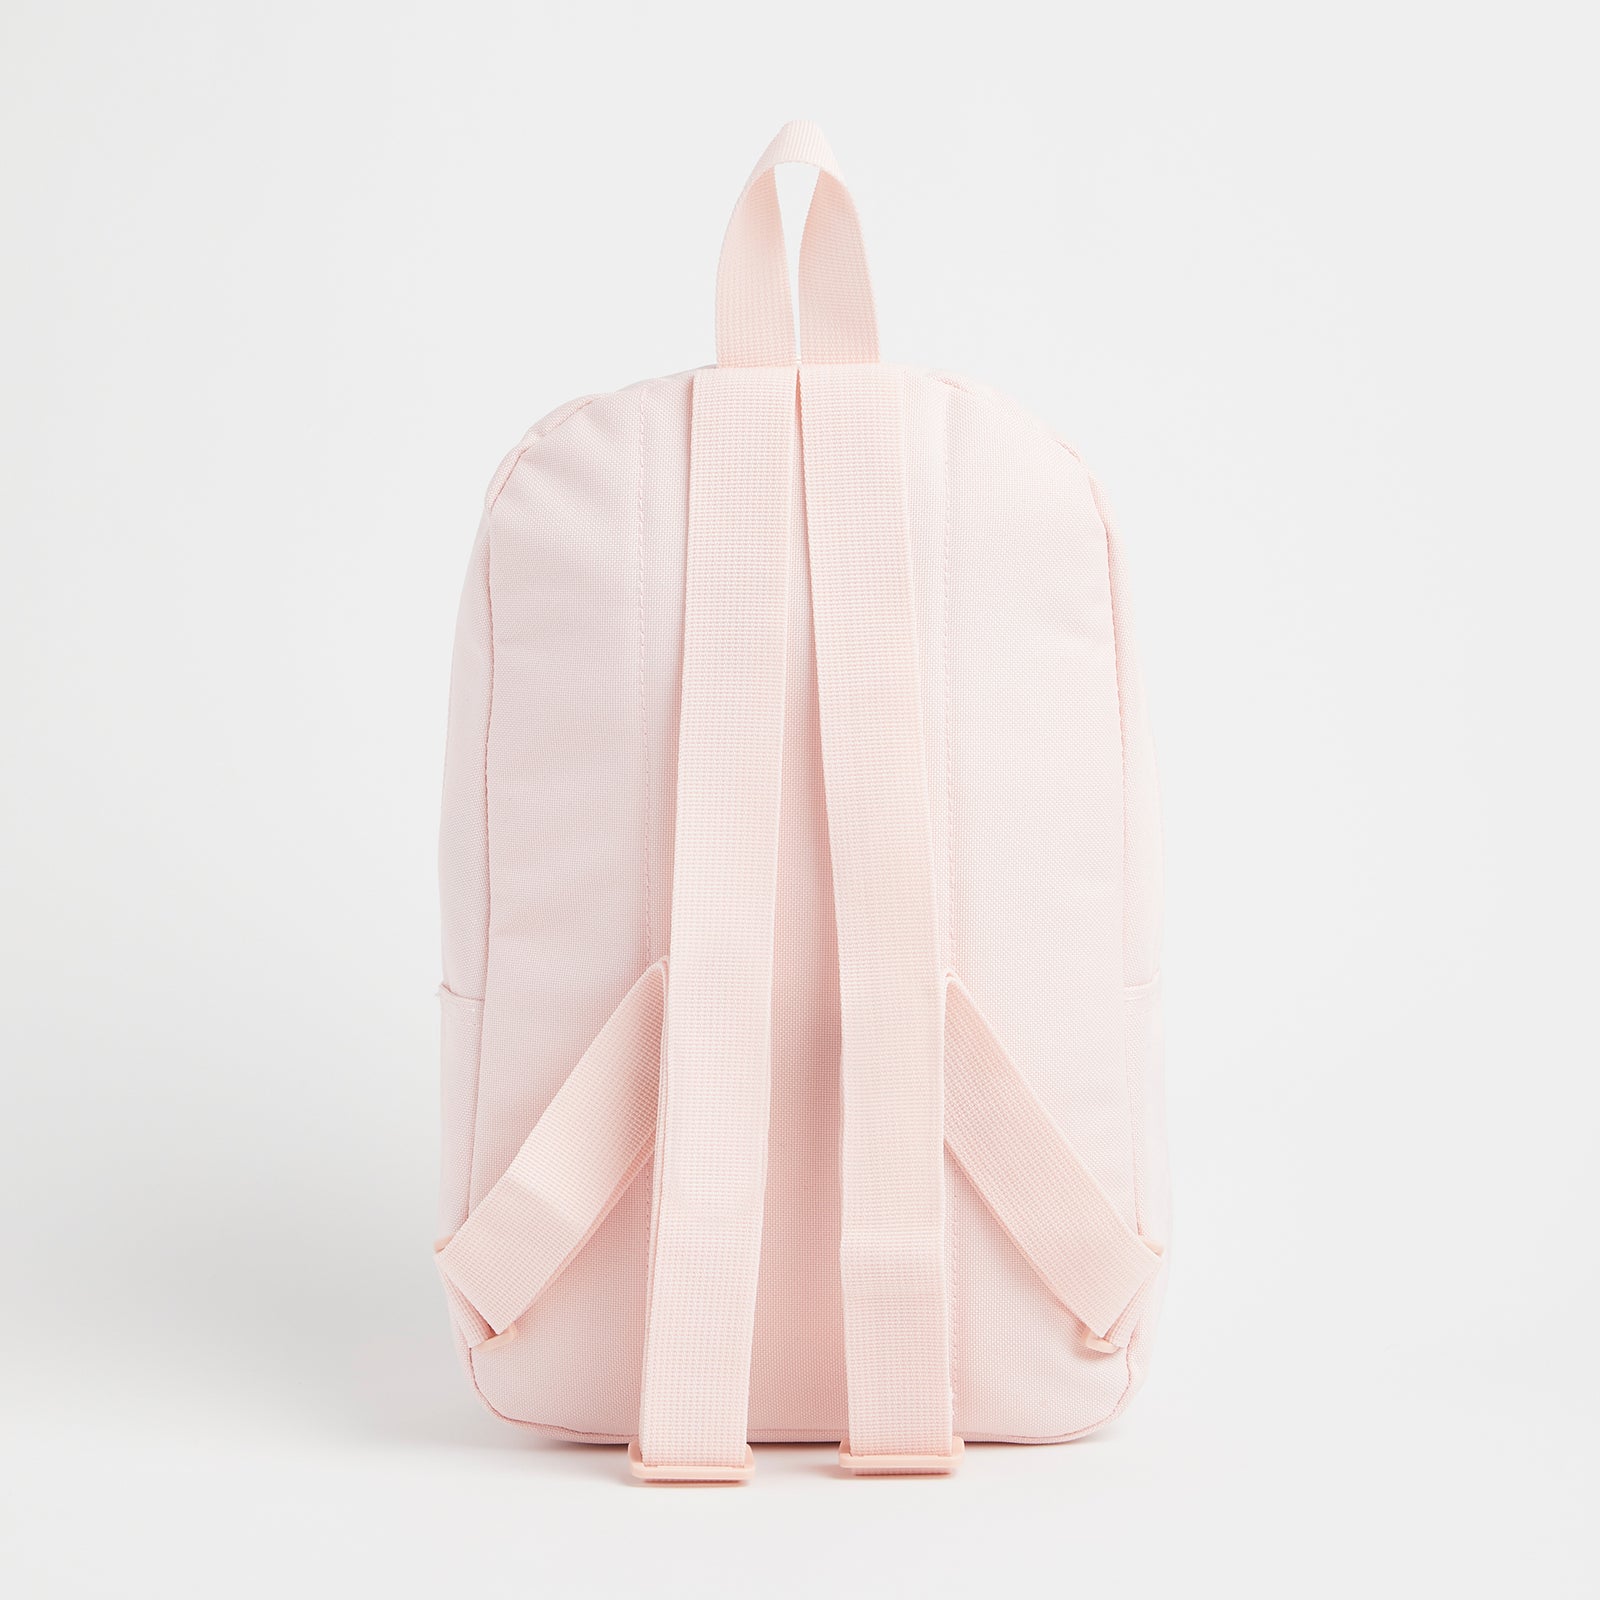 Alphabet Pink Backpack